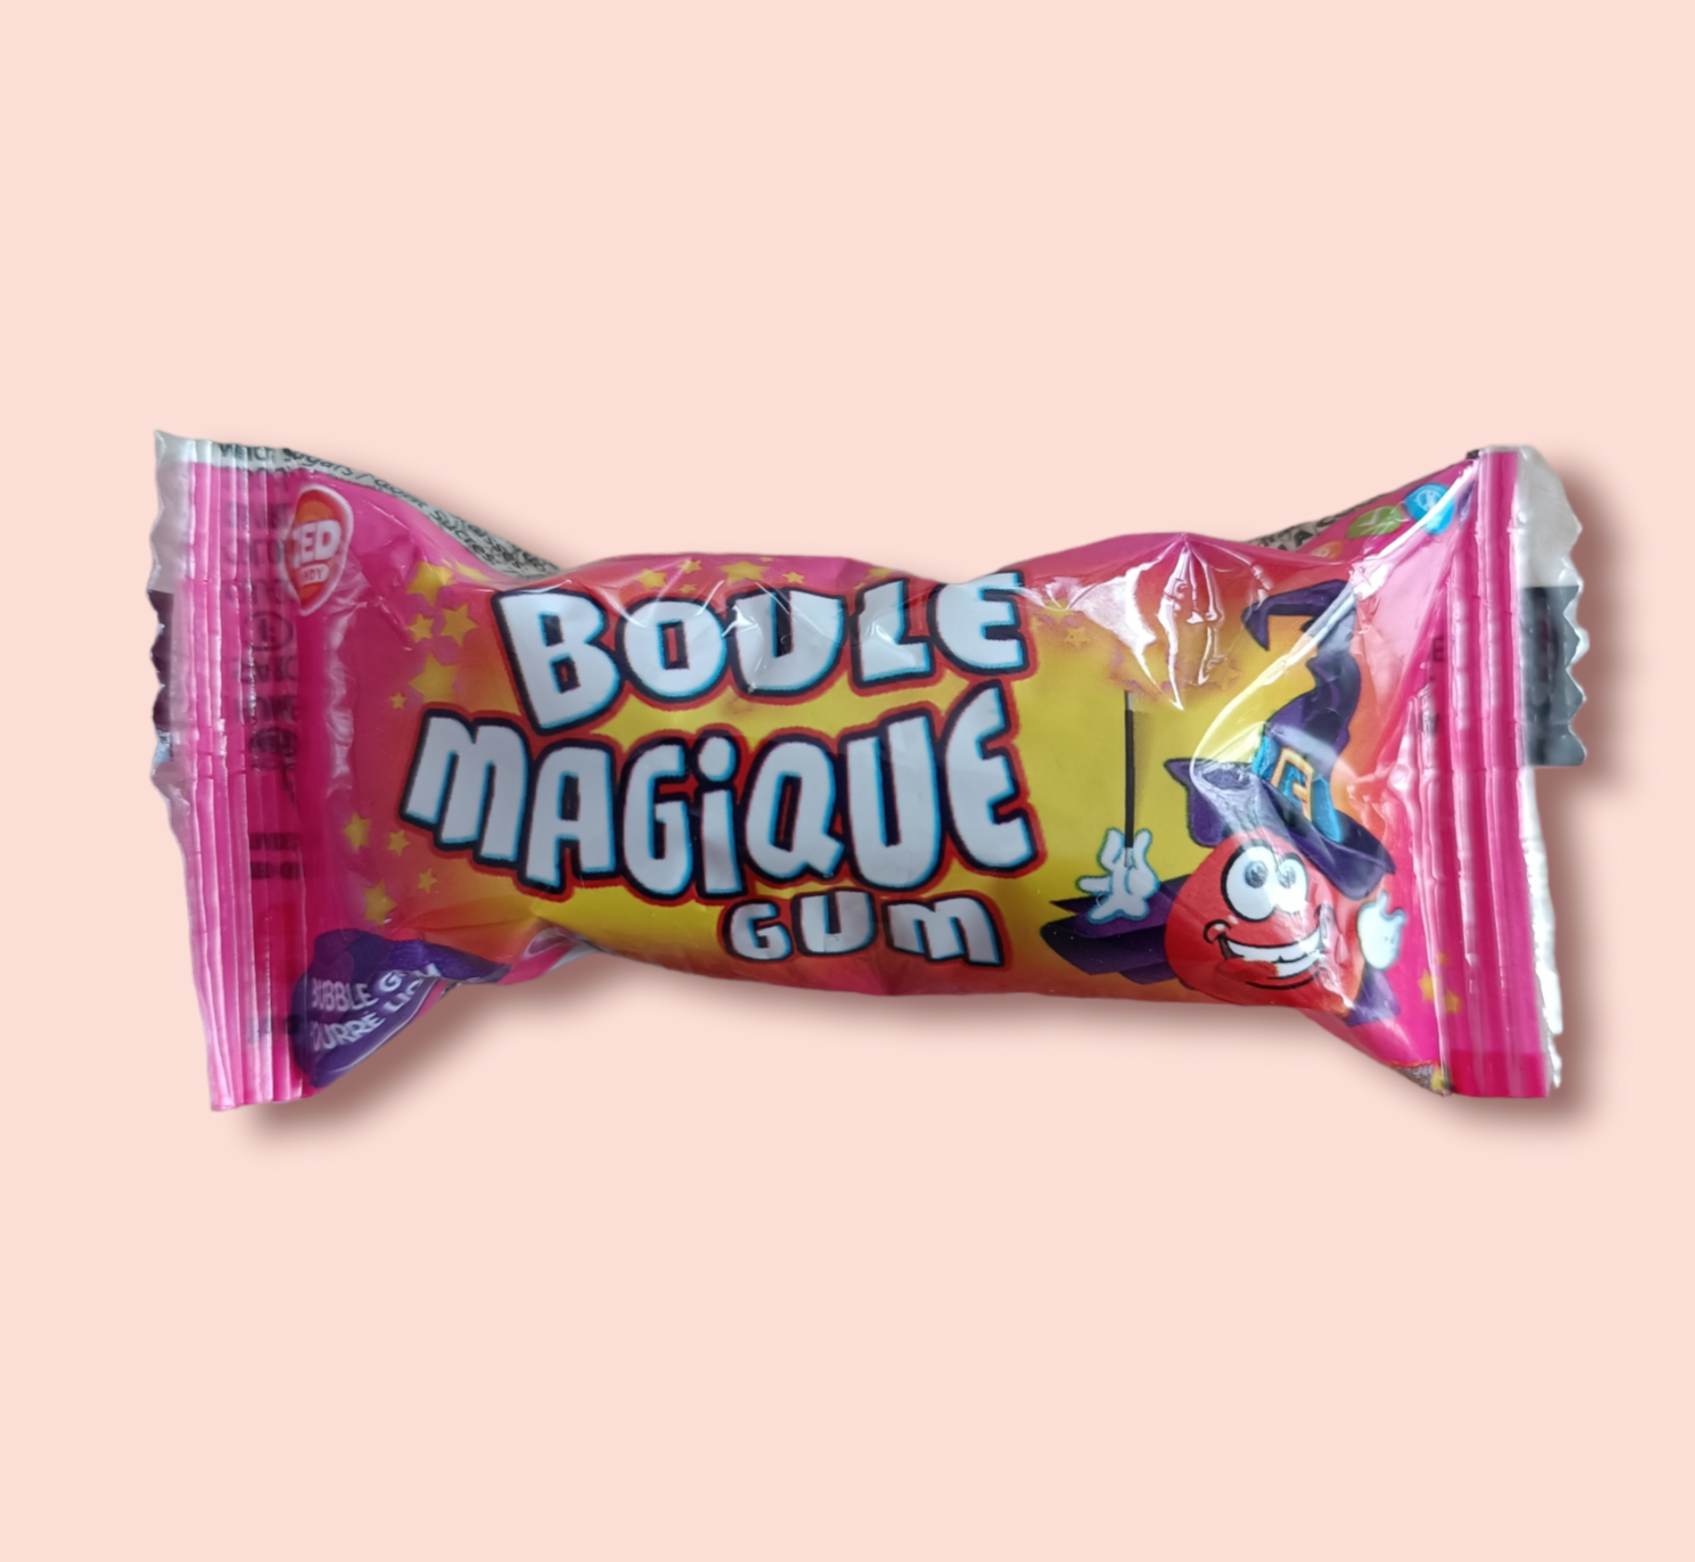 Boule Magique Cola